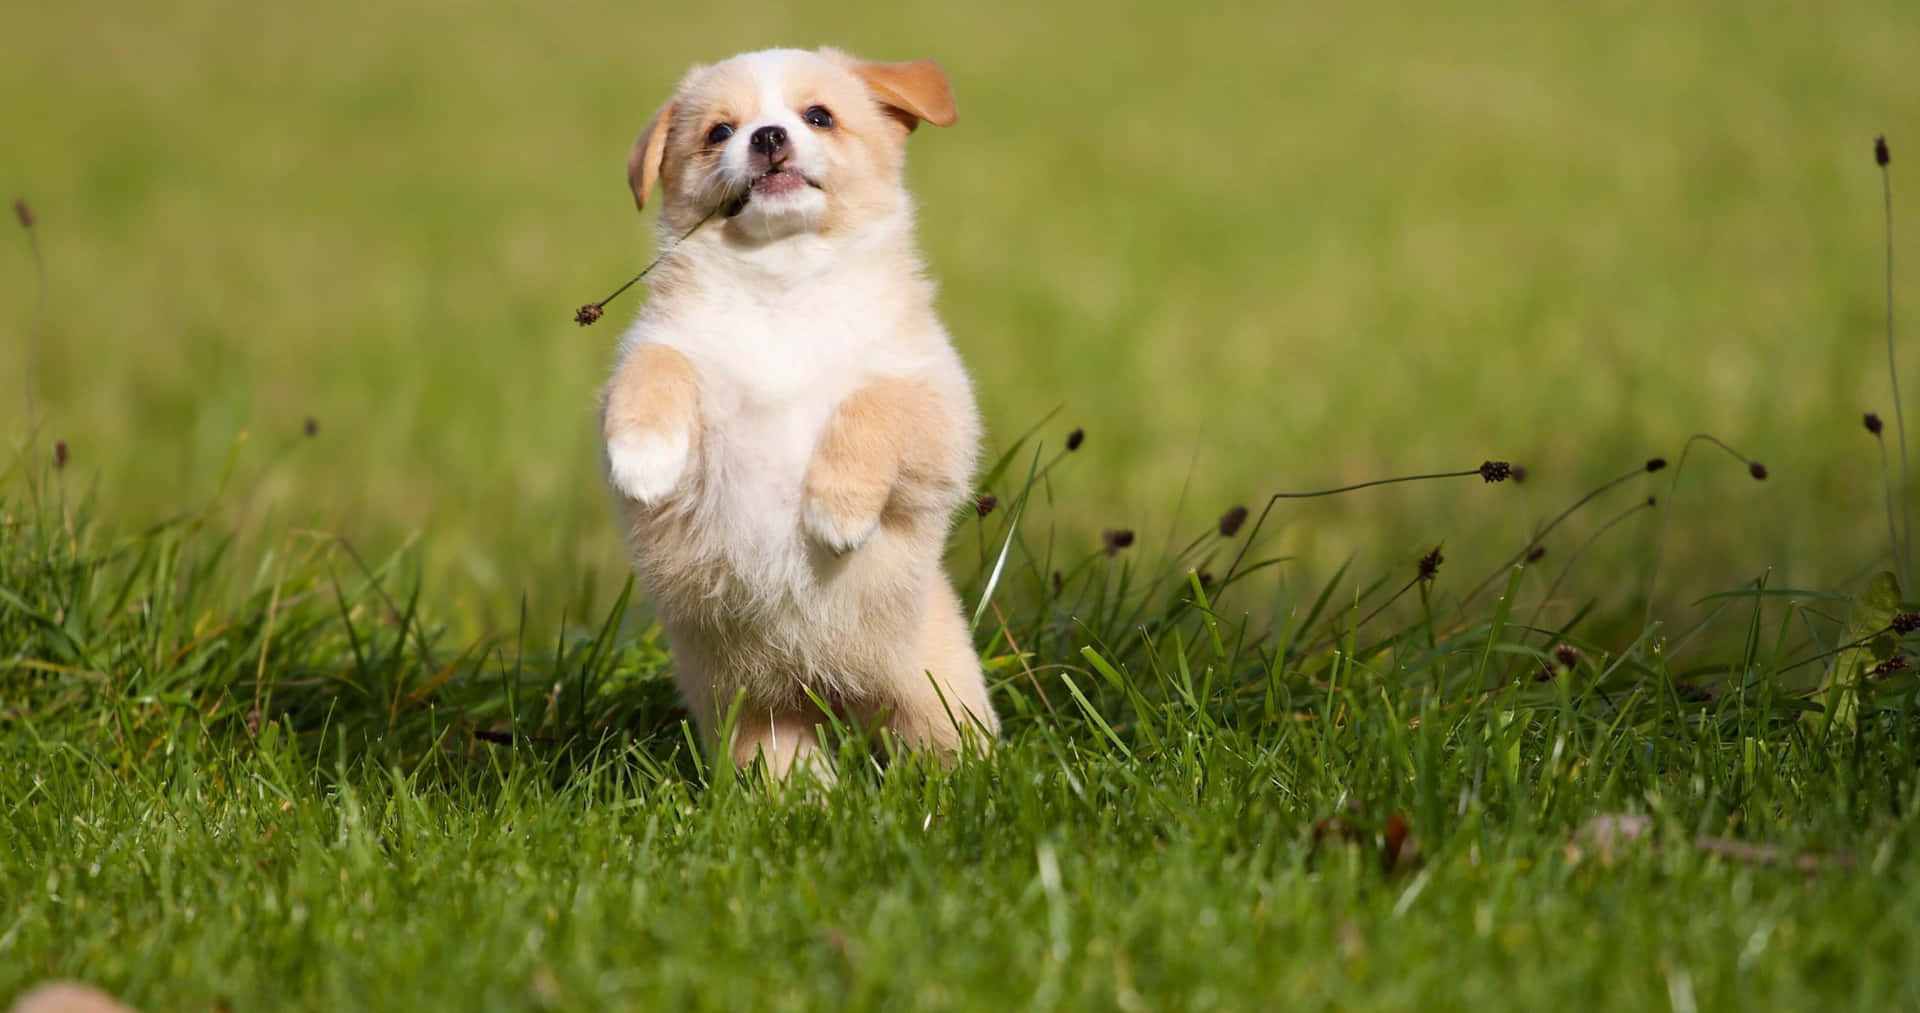 Playful Puppyin Grass4 K.jpg Wallpaper